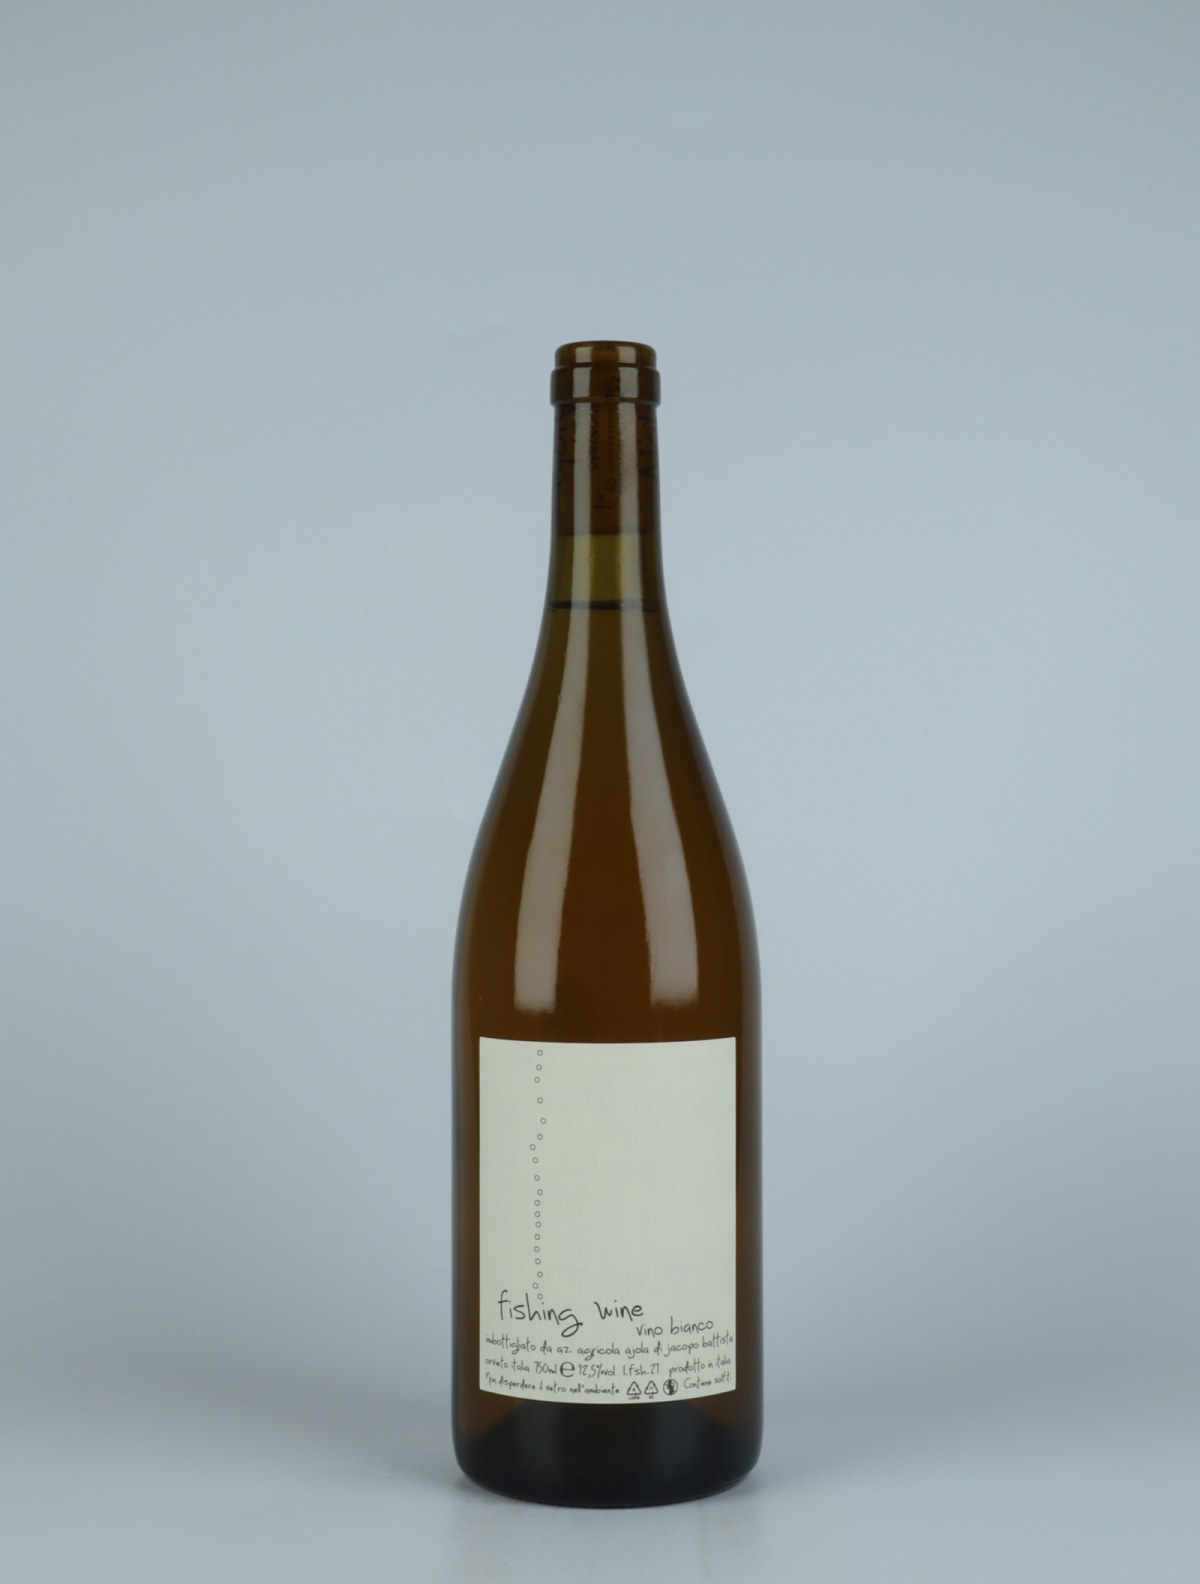 En flaske 2021 Bianco Fishing Wine Hvidvin fra Ajola, Umbrien i Italien